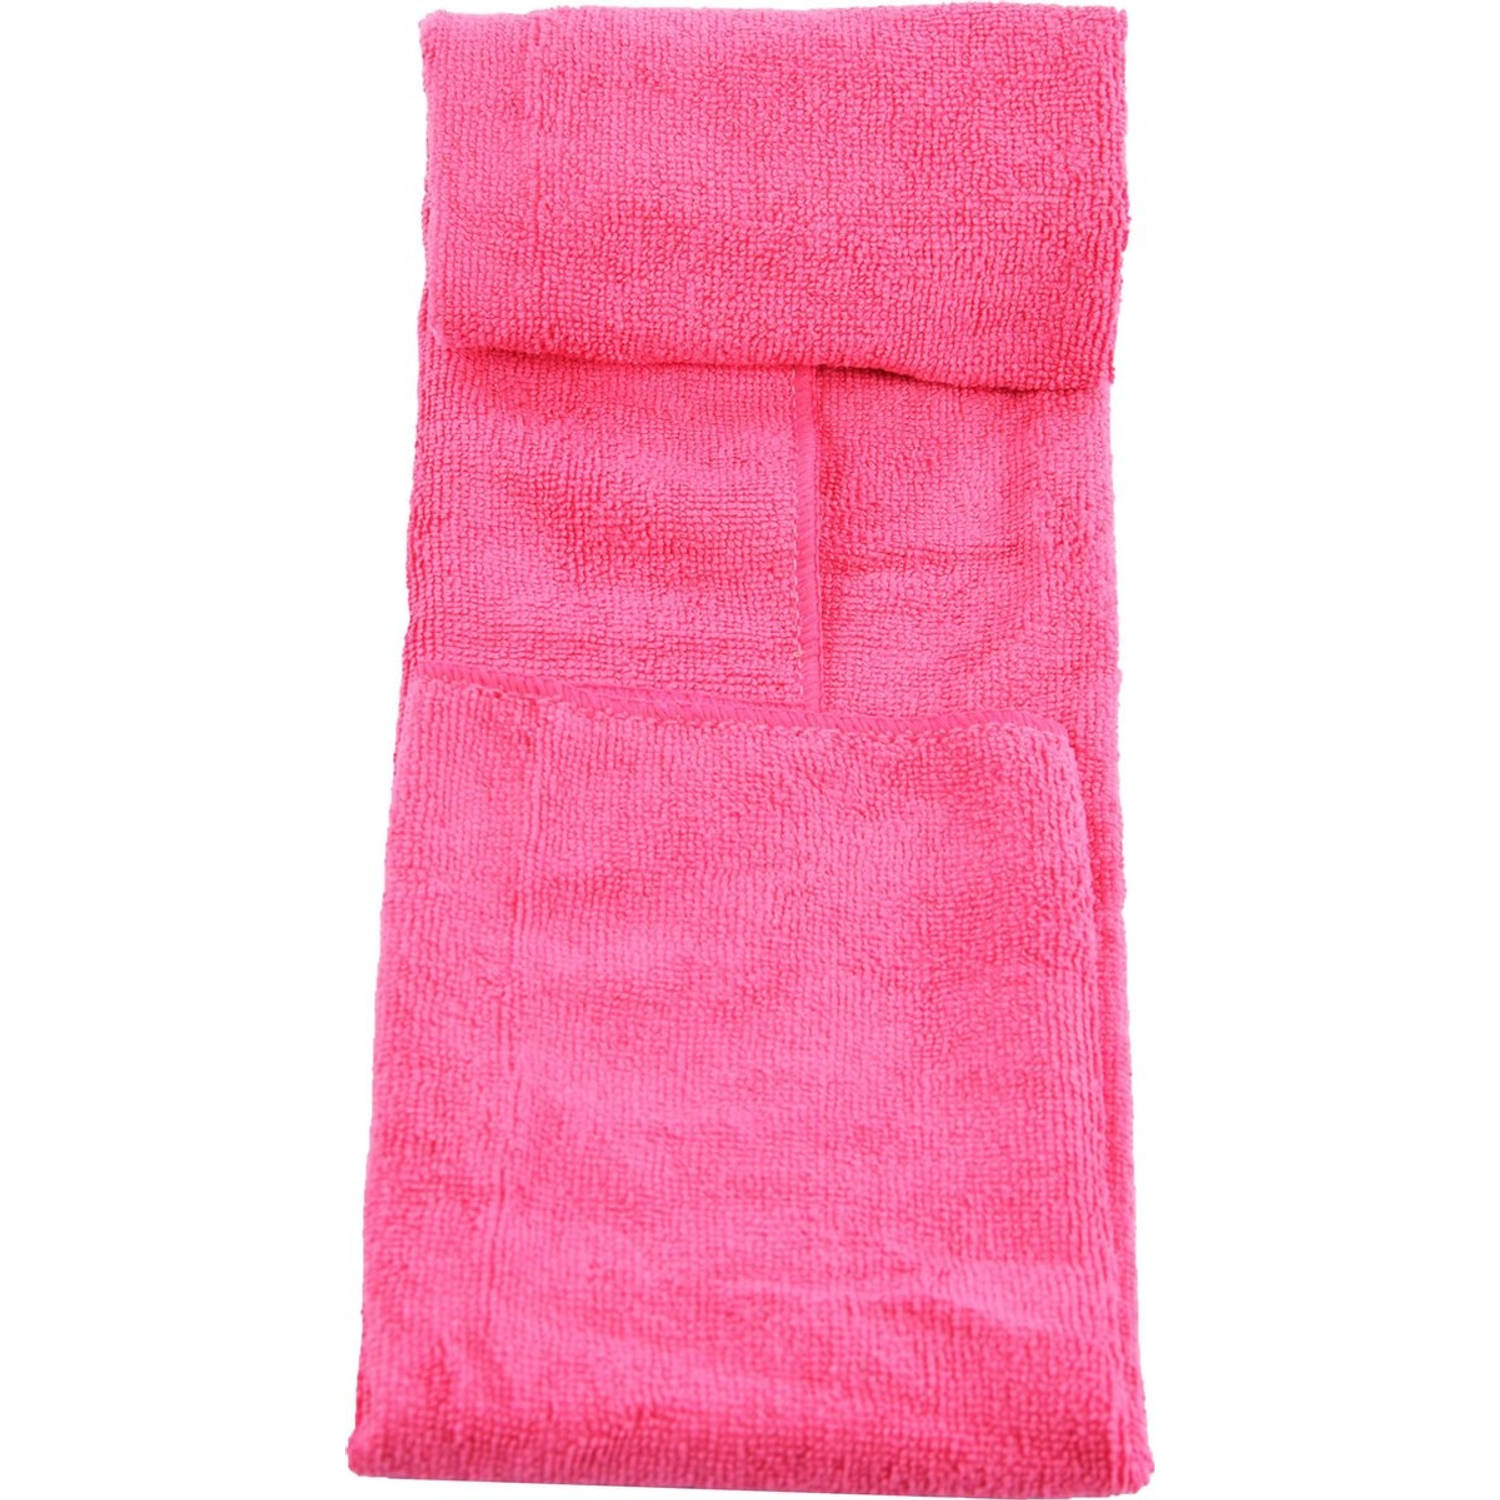 Handdoek van microvezel in draagtas. Sneldrogend - Compact - Superabsorberend Lichtgewicht. Perfecte reis-, strand | Blokker